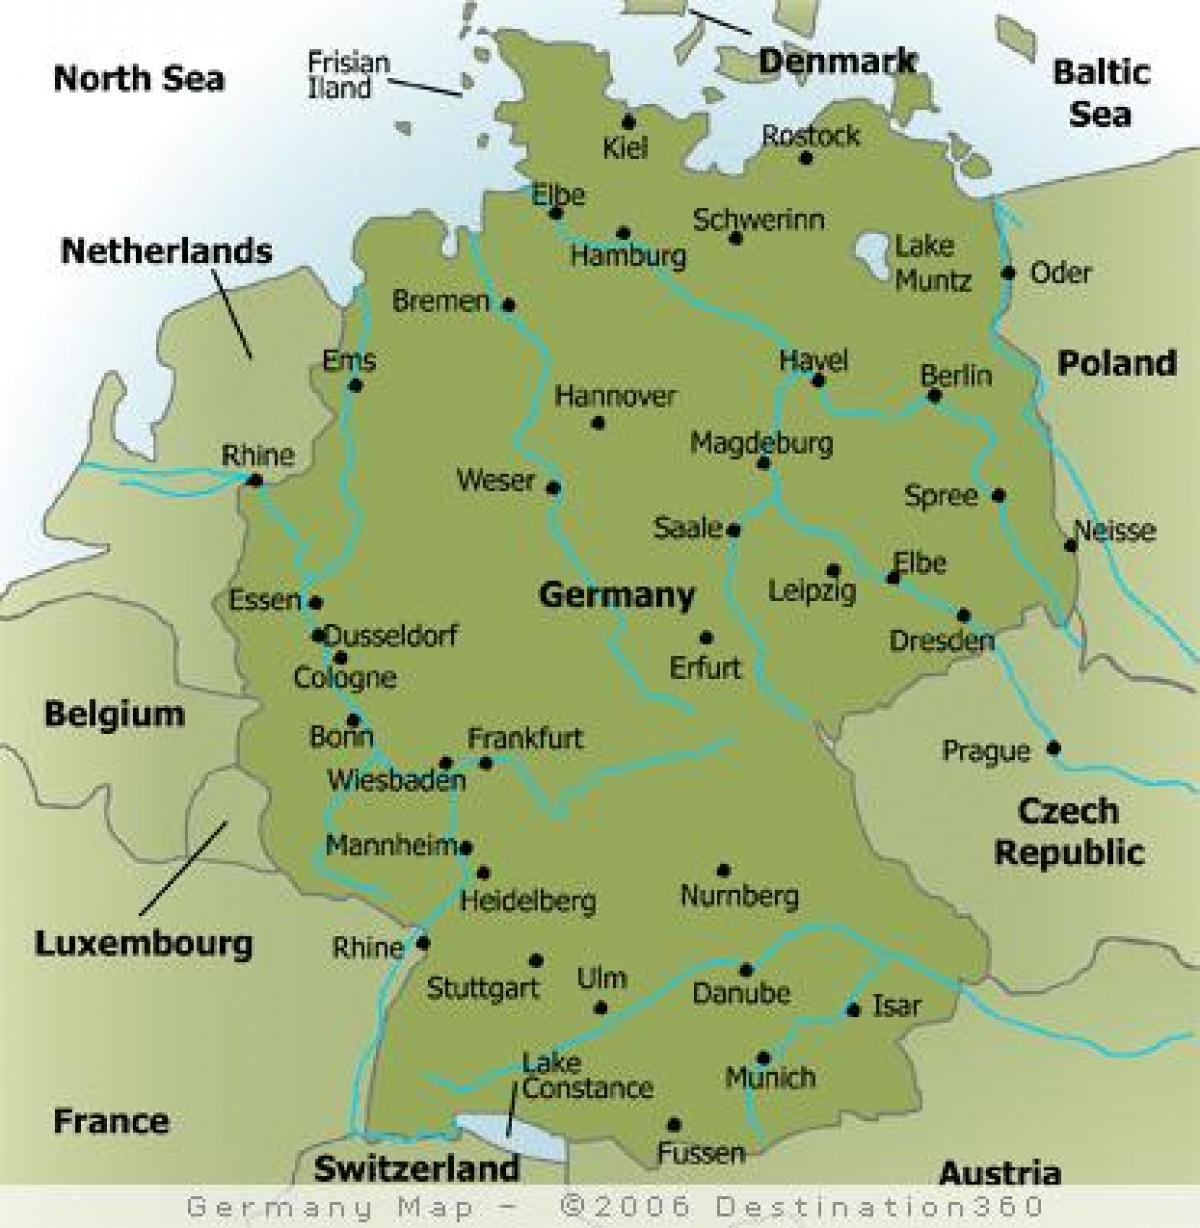 Mapa de Alemania con las principales ciudades